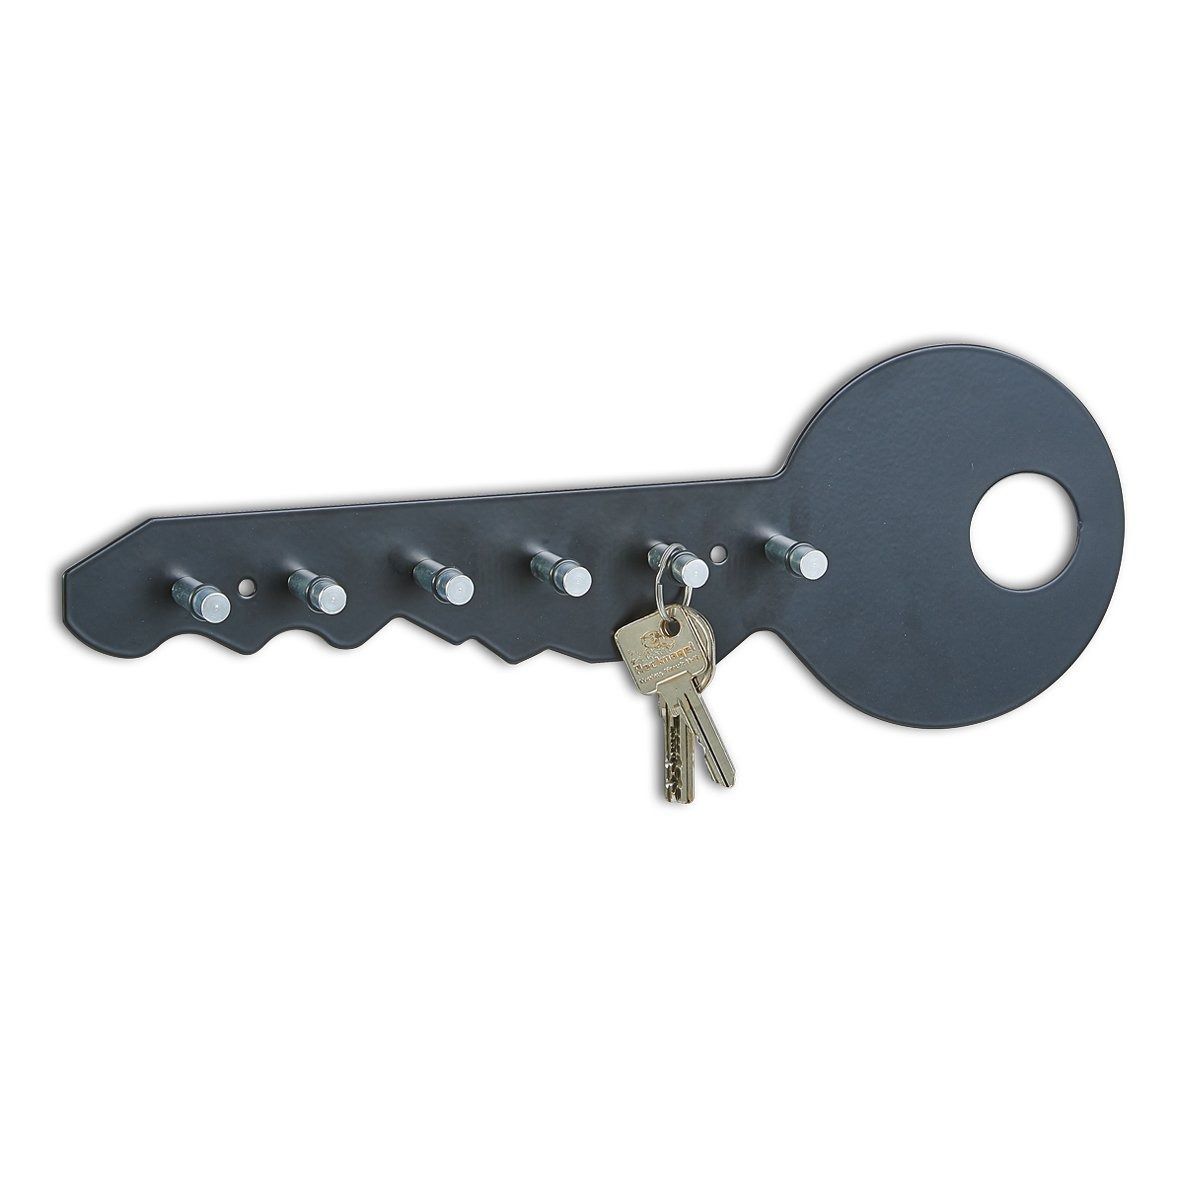 Kvalitní věšák na klíče, 6 háčků, 35x12x4 cm, černá barva, ZELLER - EDAXO.CZ s.r.o.